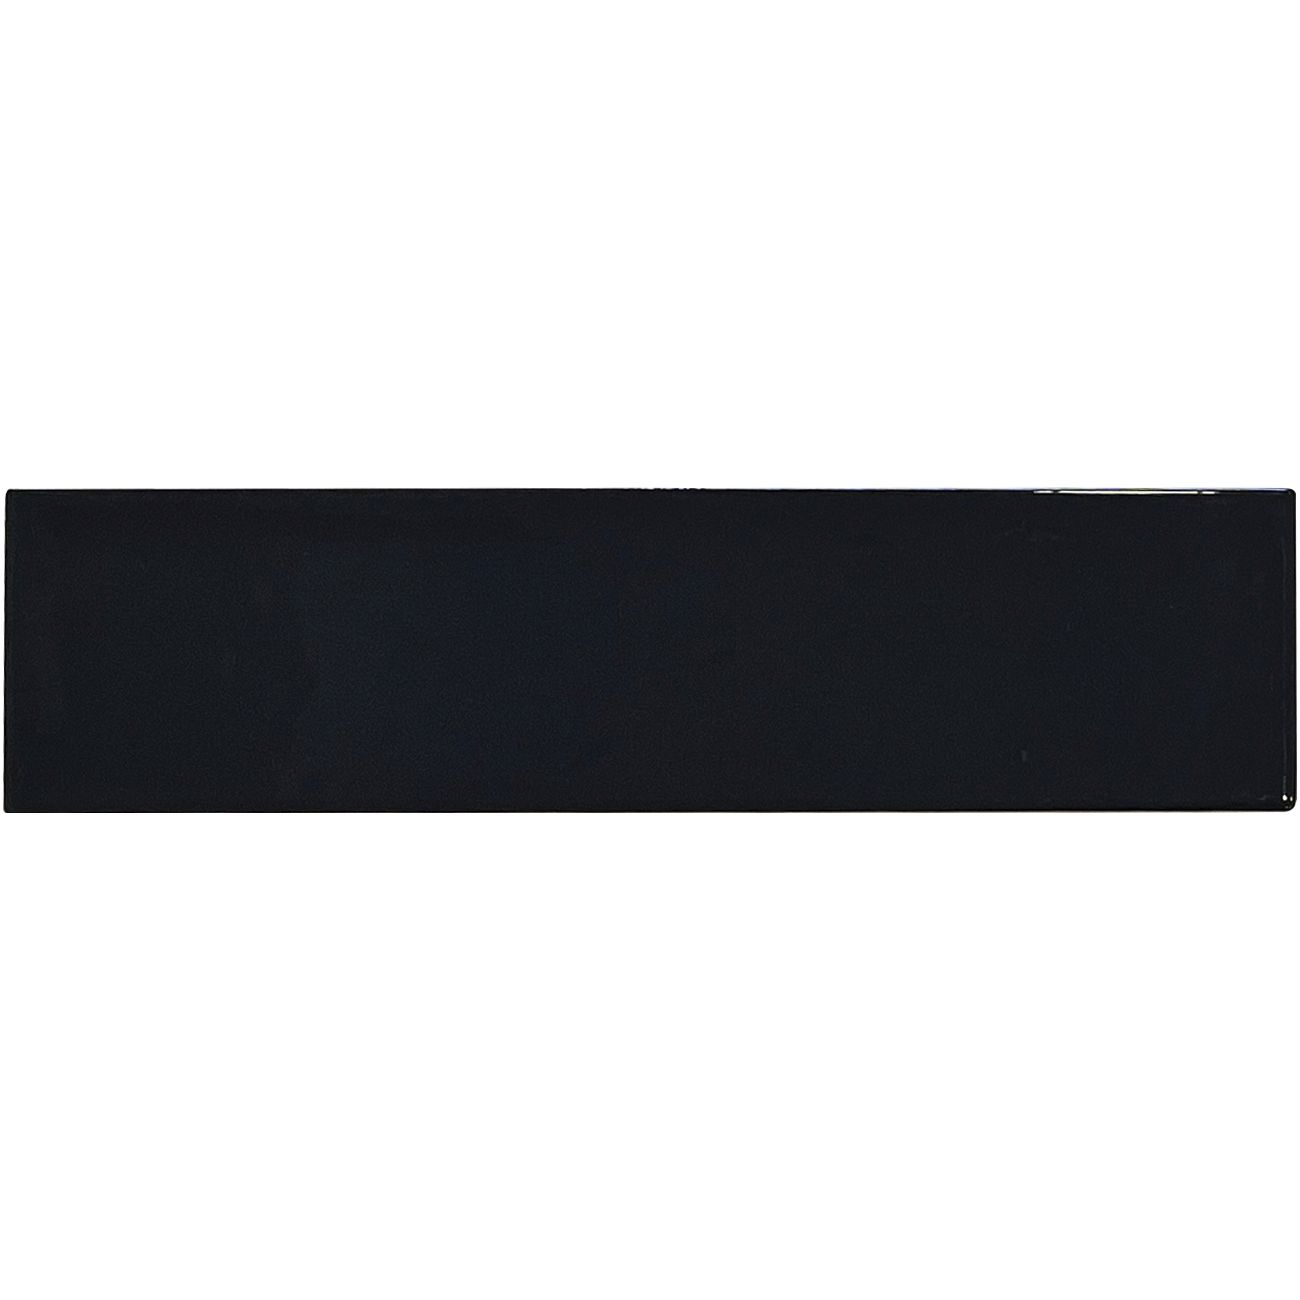 Керамическая Плитка Decocer Liguria Liguria Black 7.5x30 см С0005596